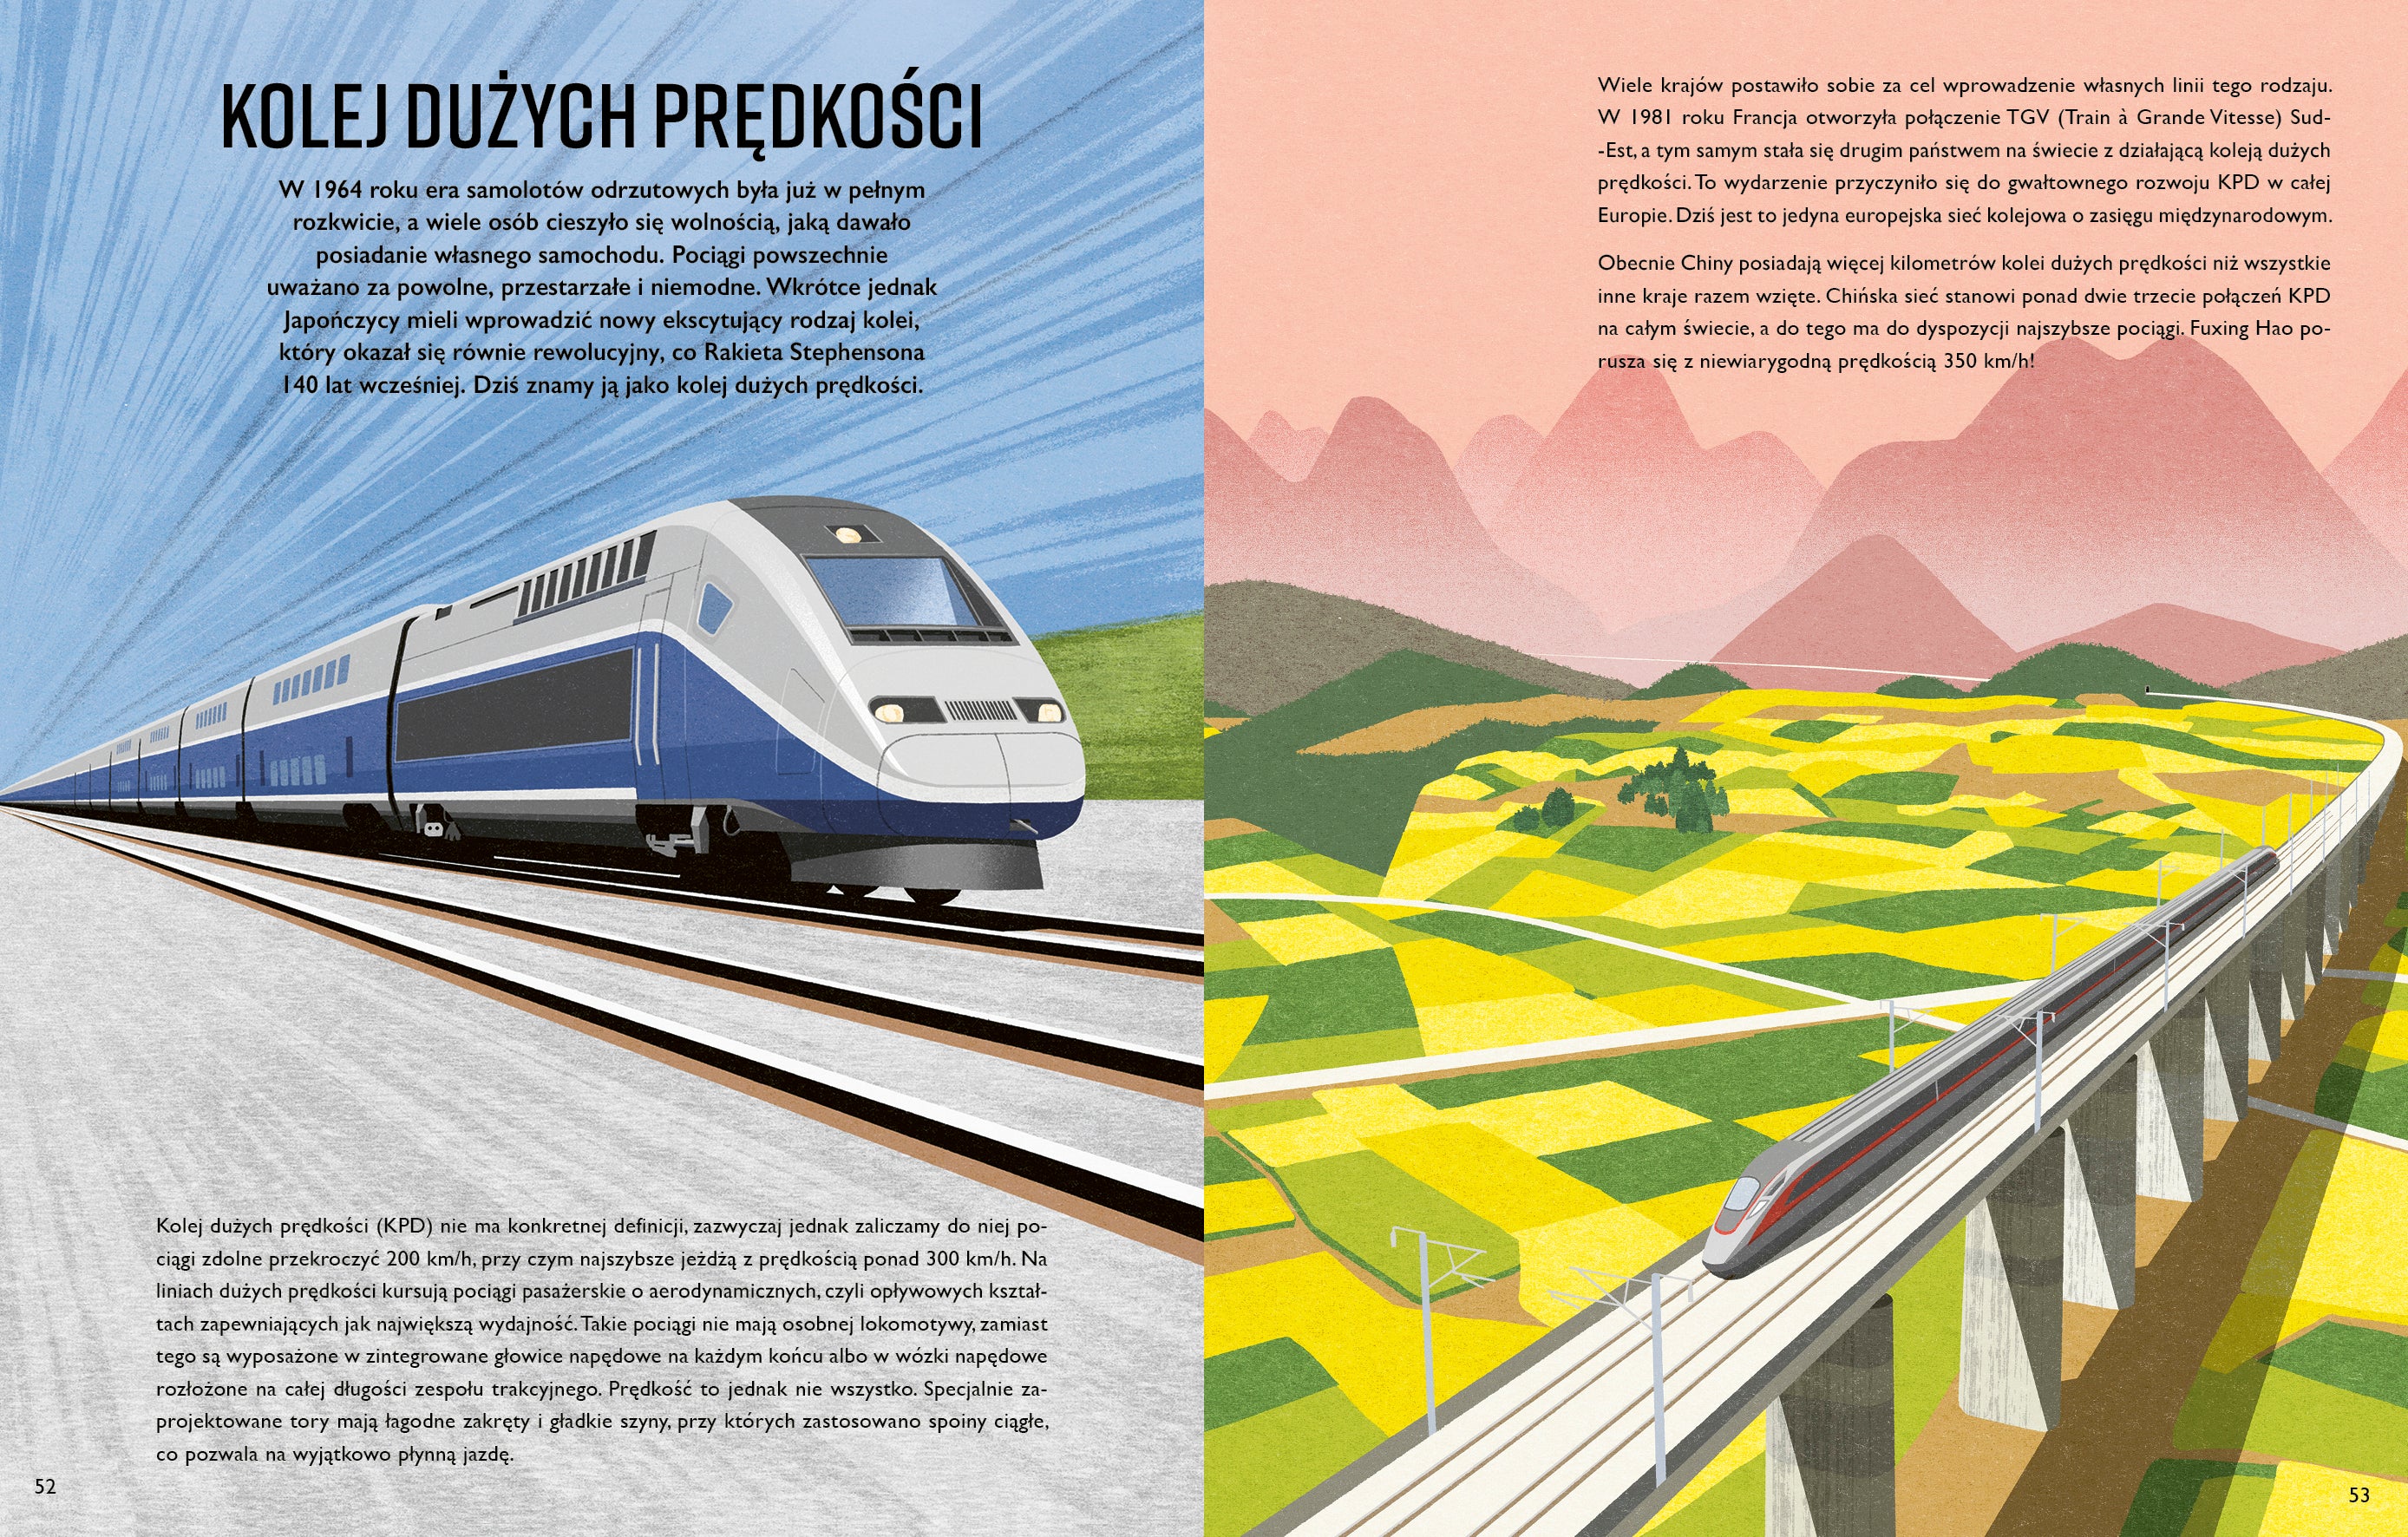 Wydawnictwo Kropka: Pociągi. Fascynujący świat kolei